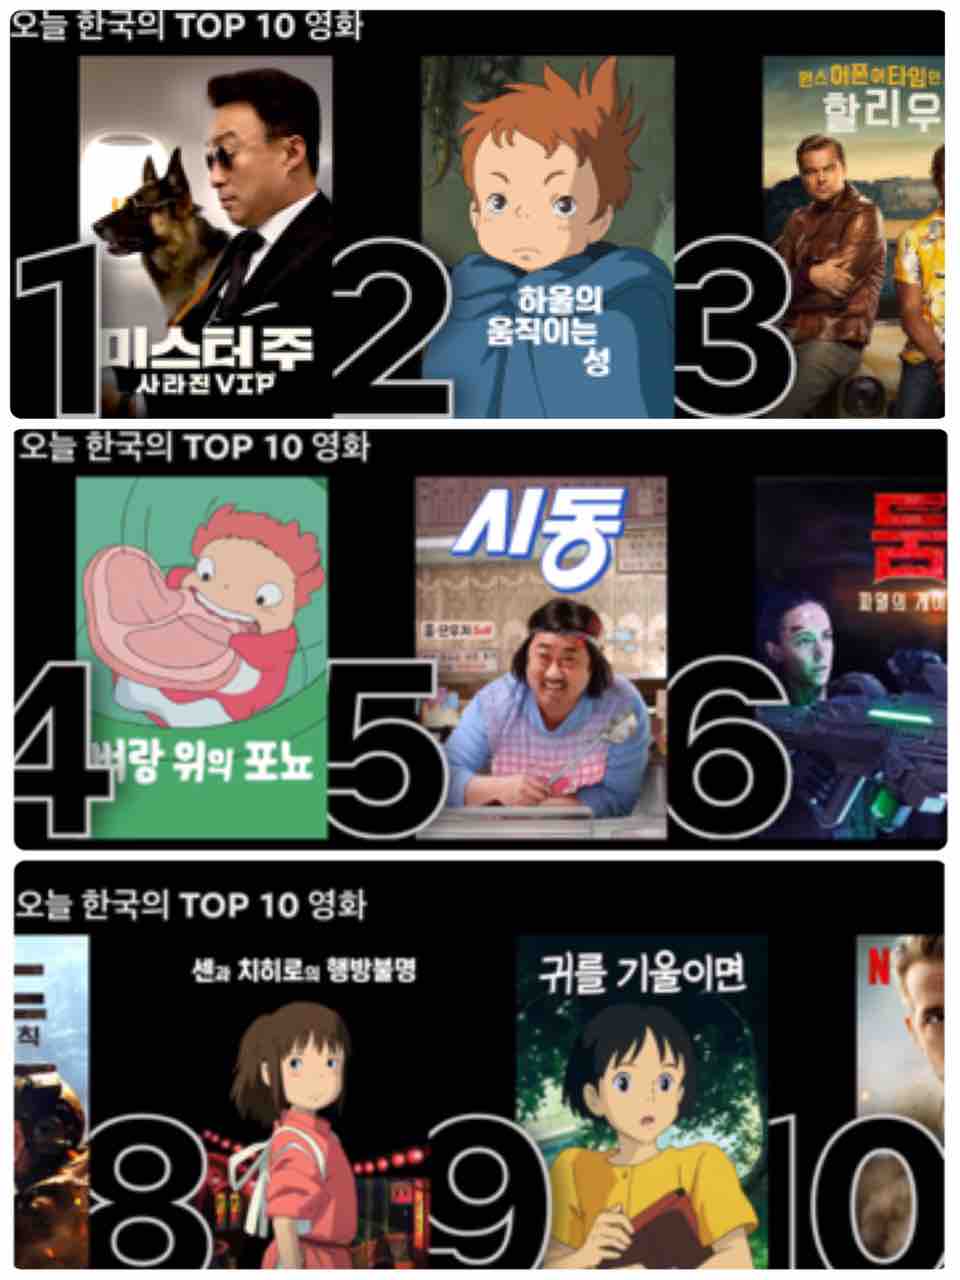 韓国netflix 映画トップ10にジブリ作品が4本 ソウルで韓屋生活